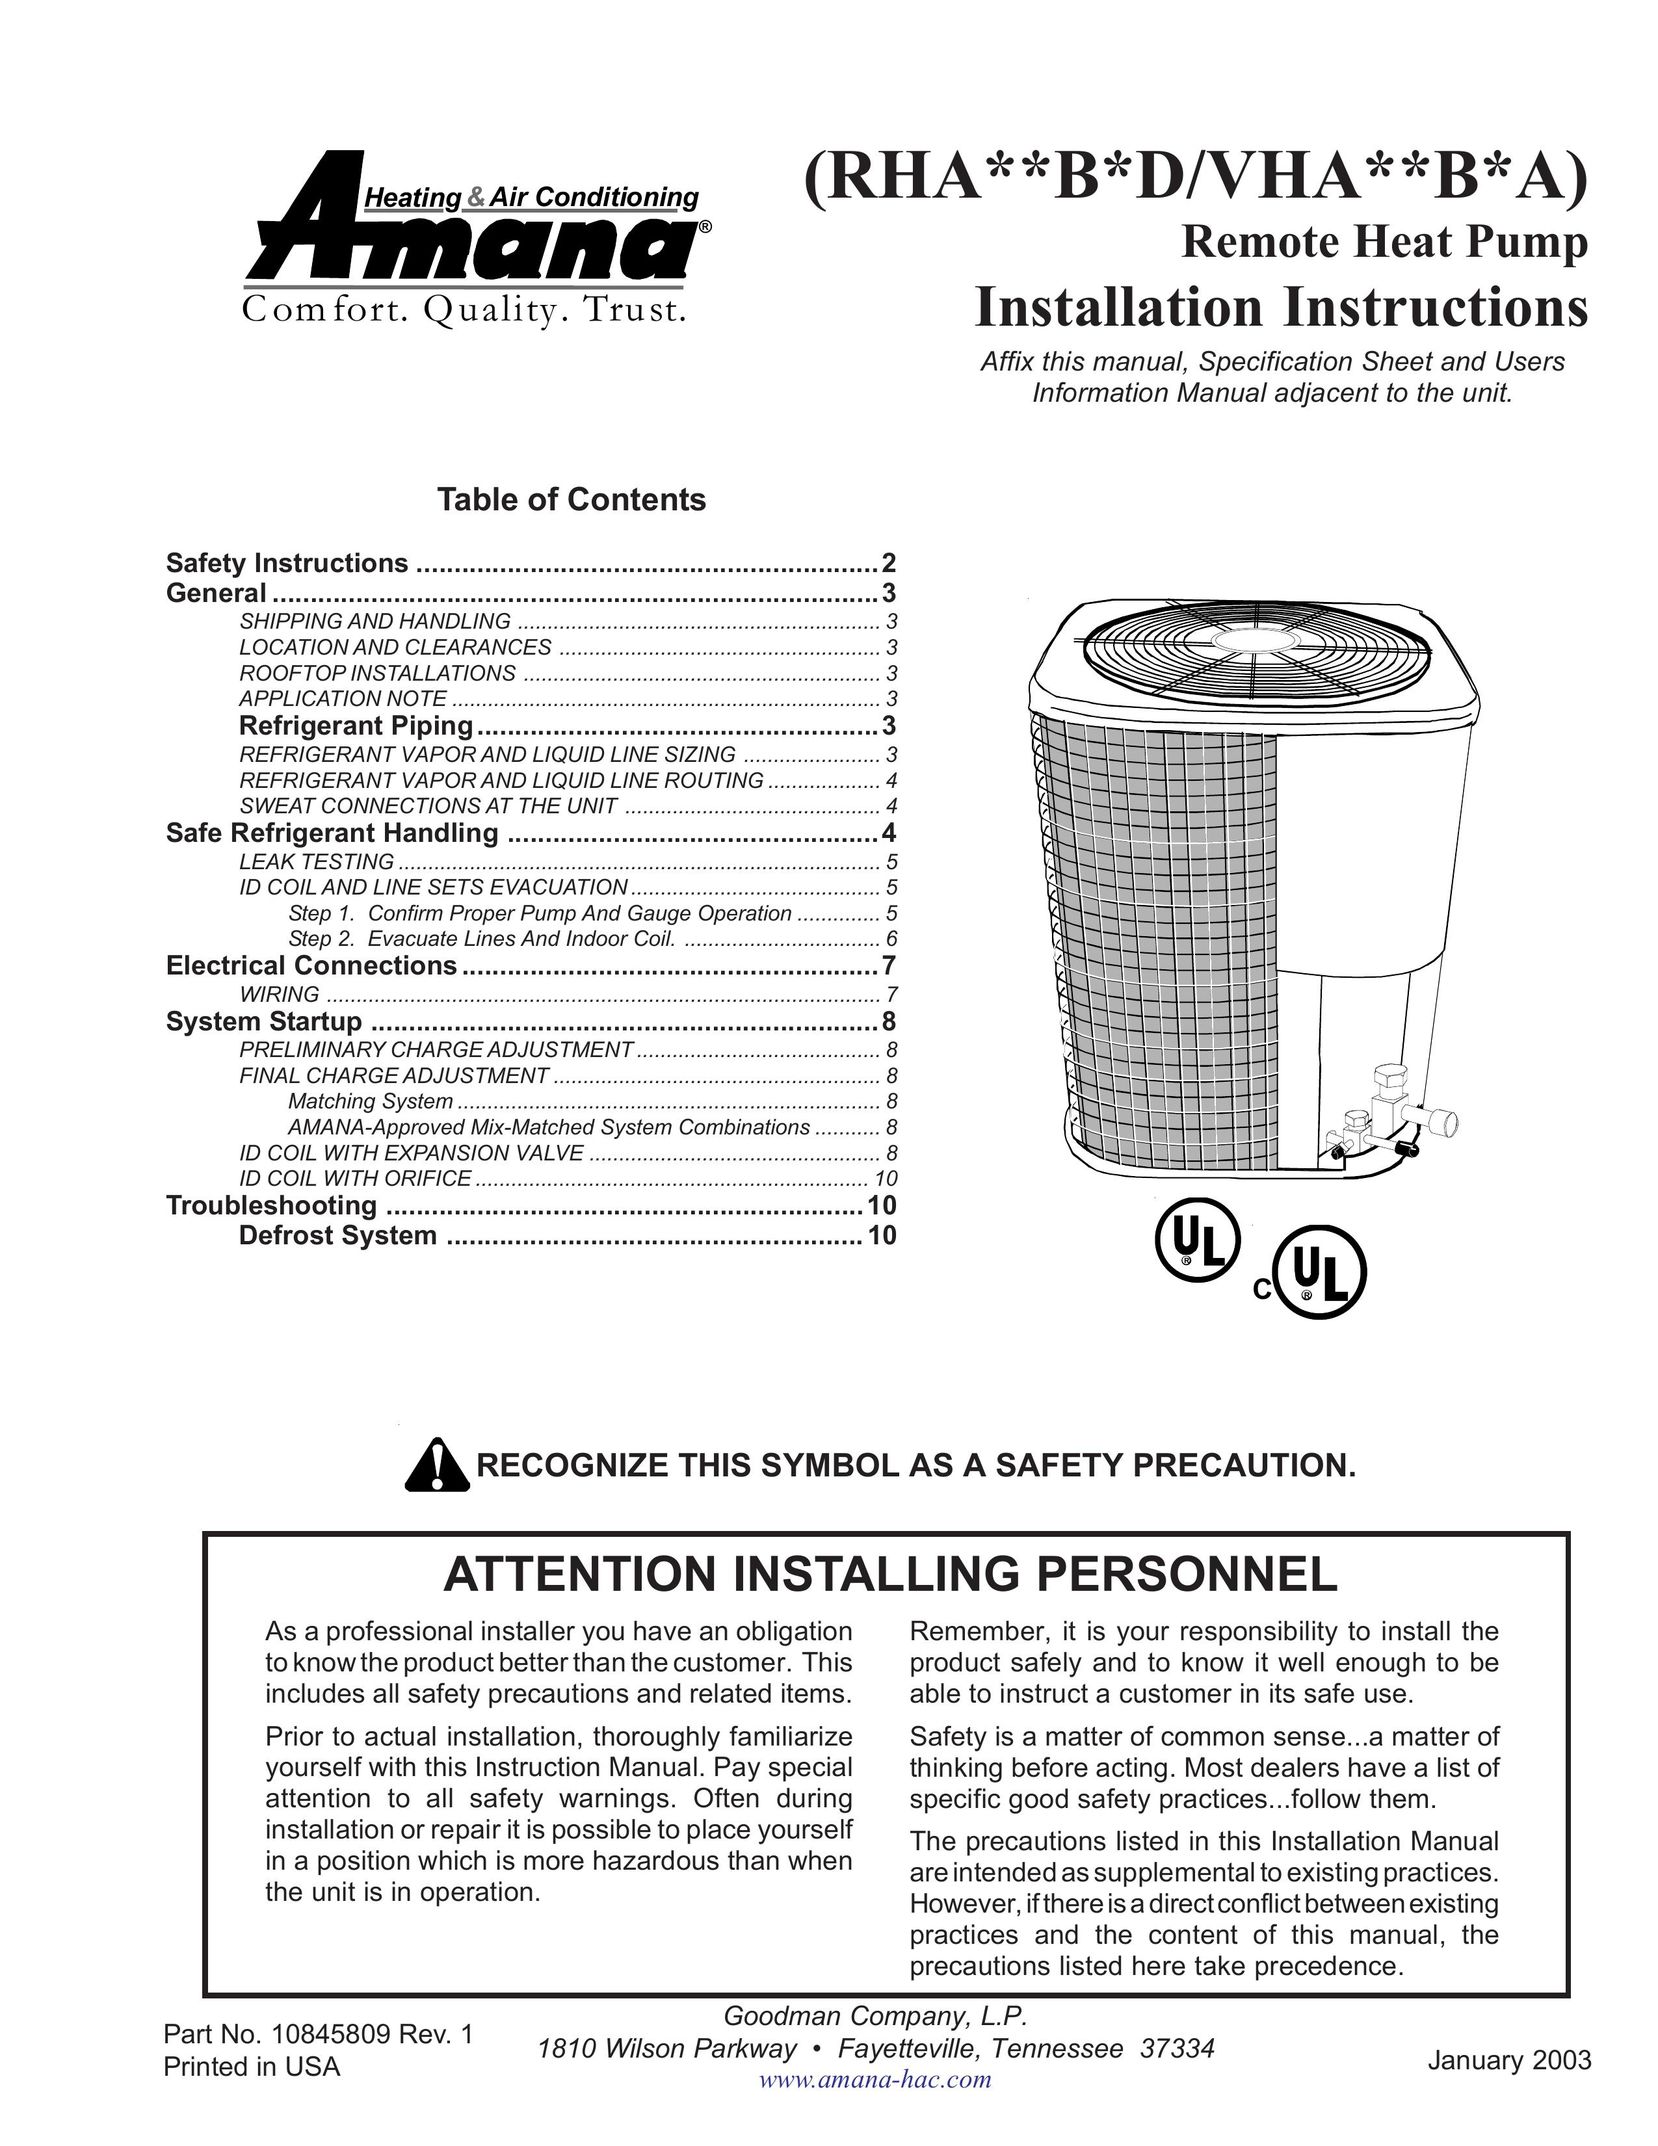 Goodman Mfg RHA**B*D Heat Pump User Manual